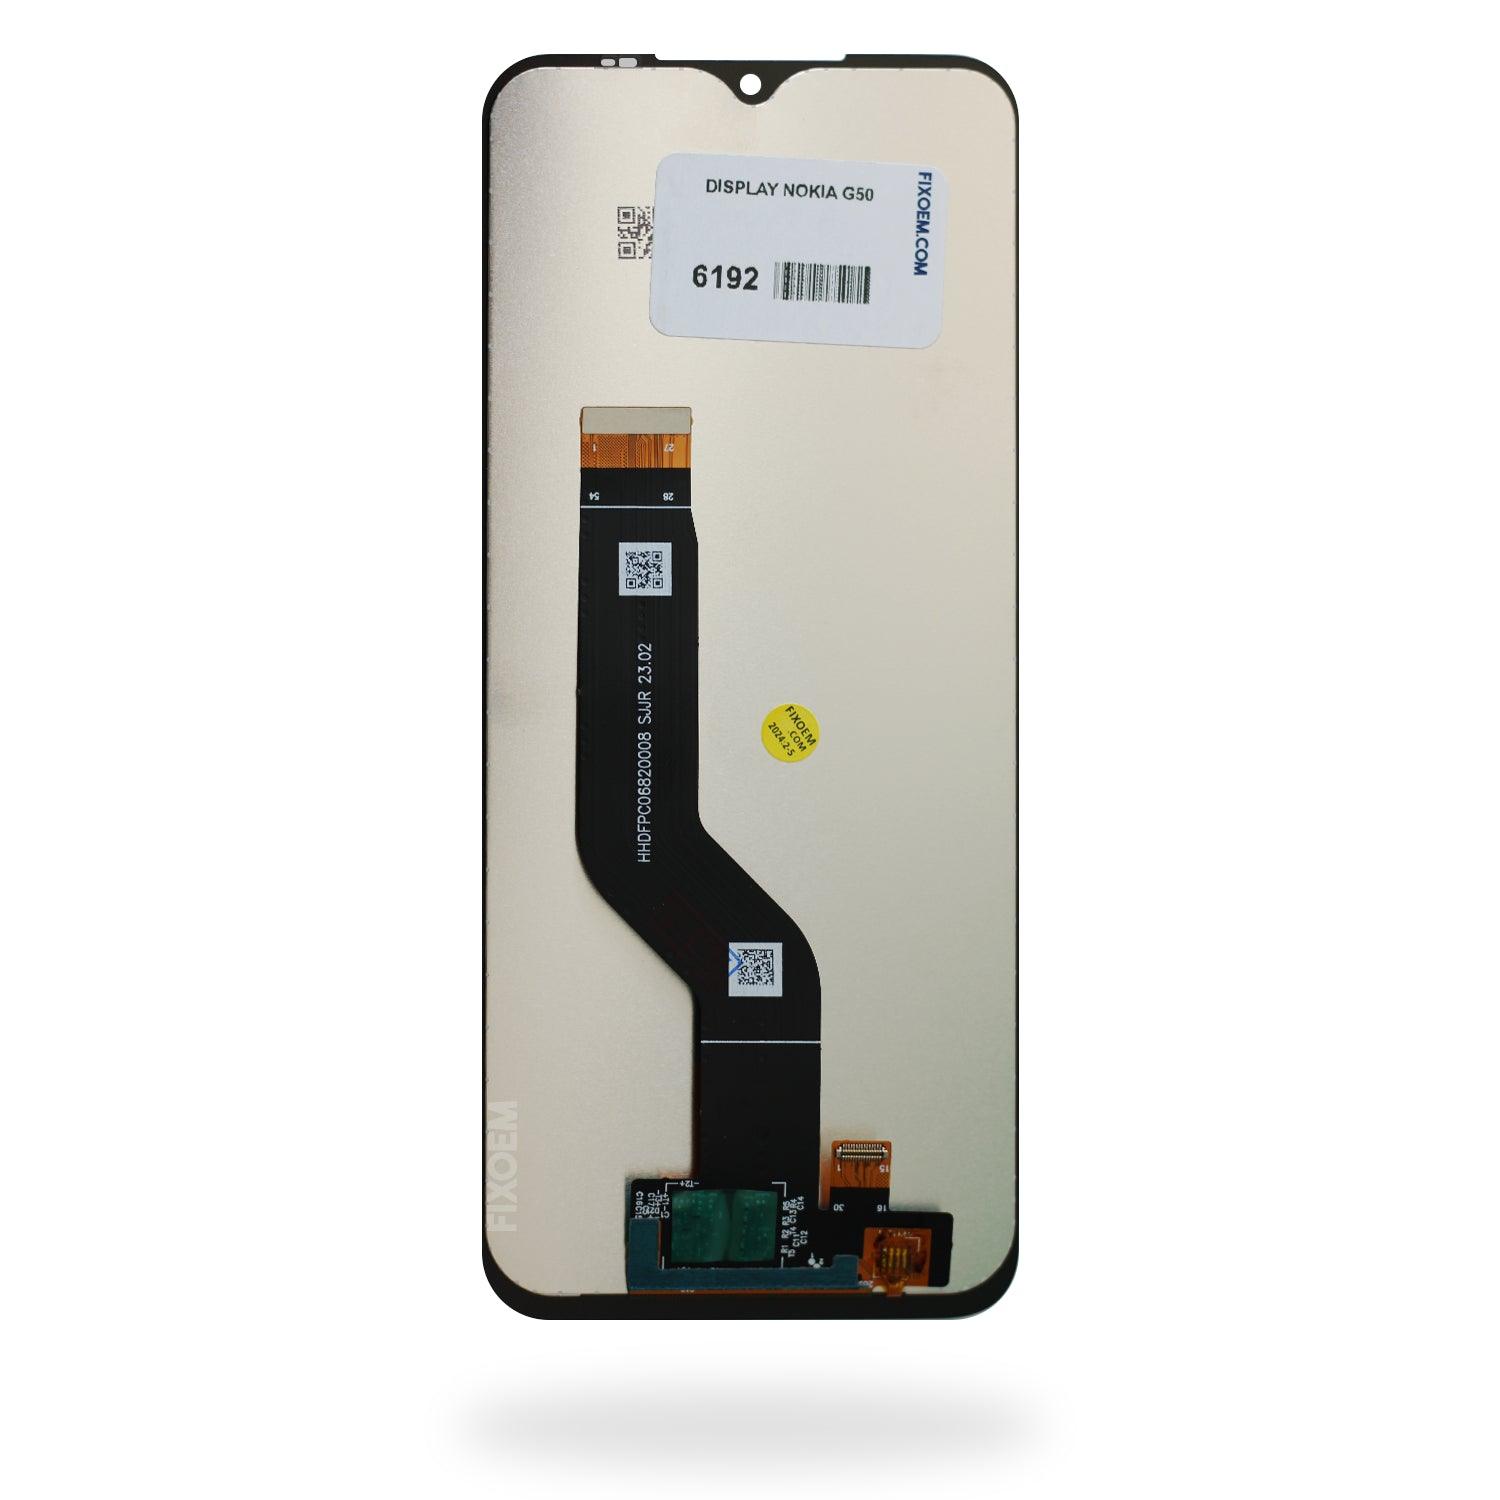 Display Nokia G50 Ta-1367 a solo $ 260.00 Refaccion y puestos celulares, refurbish y microelectronica.- FixOEM